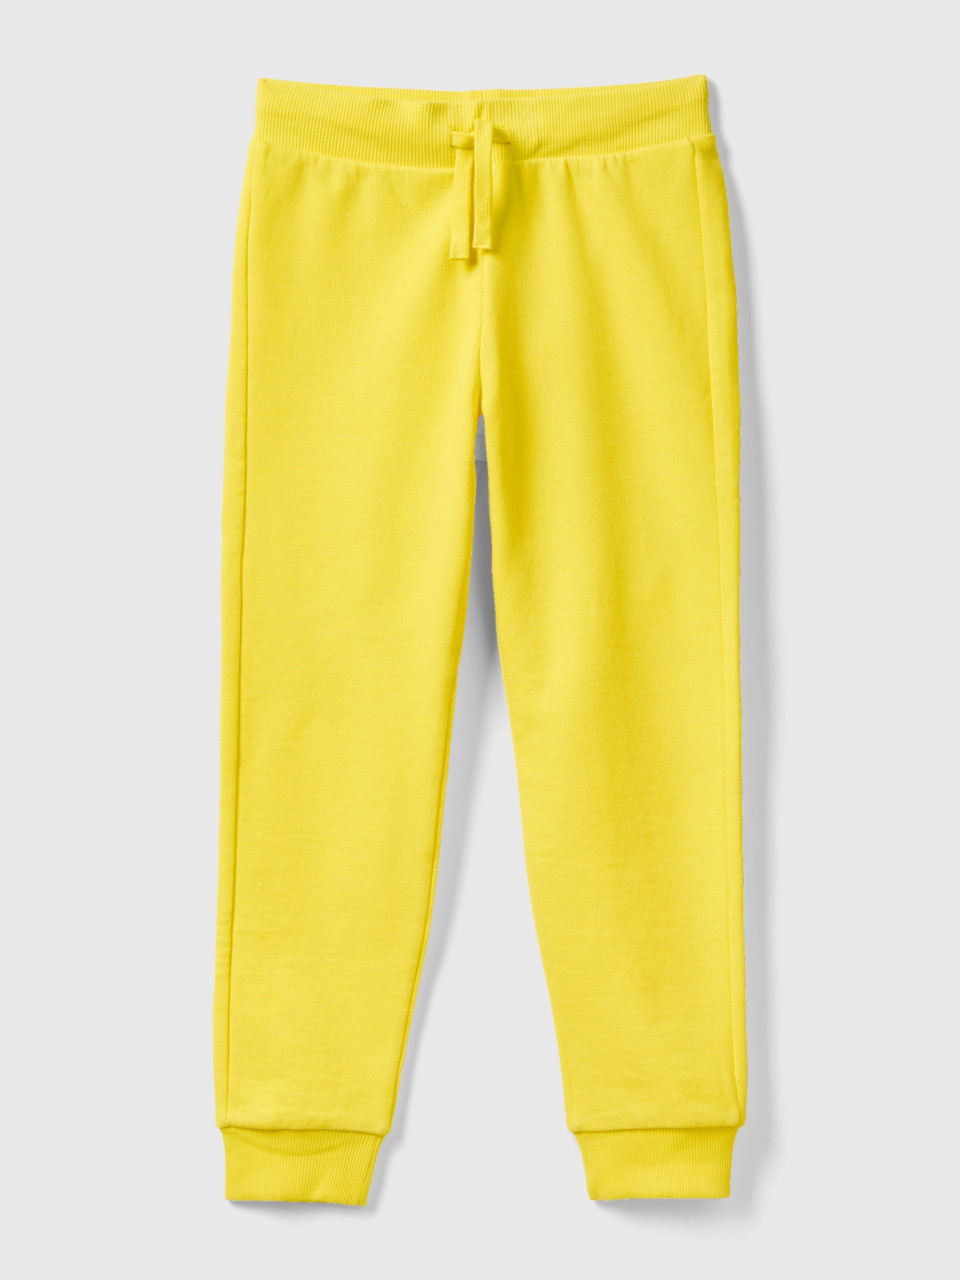 Benetton, Sportliche Hose Mit Tunnelzug, Gelb, male